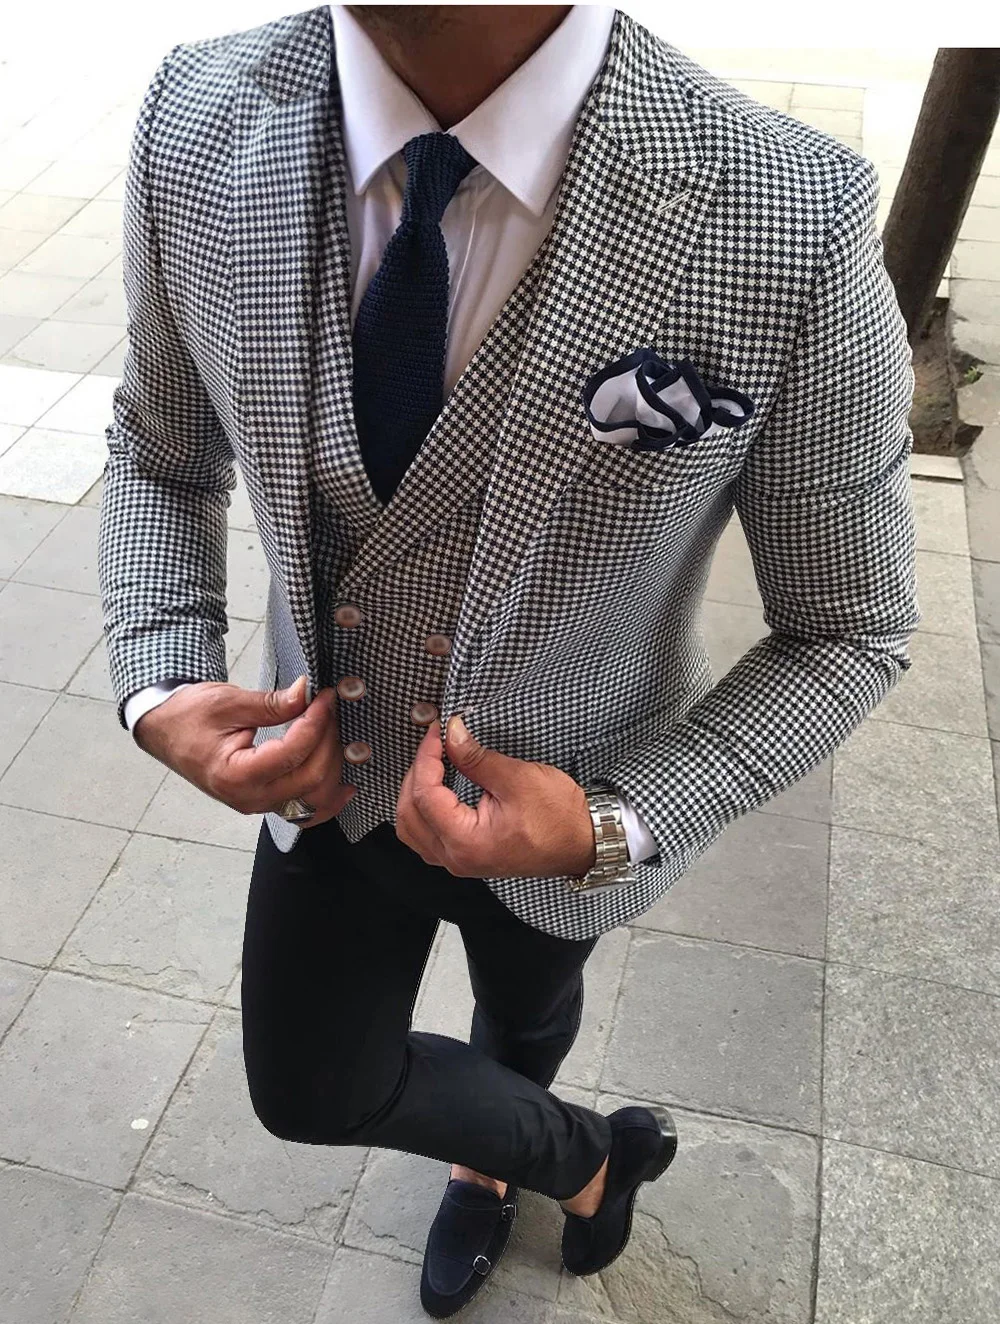 White Men's Suits Formal 3 Pieces Plaid Fashion Notched Lapel Tuxedos Wedding Groomsmen Suits Men 2019 ( Jacket + Vest + Pants )